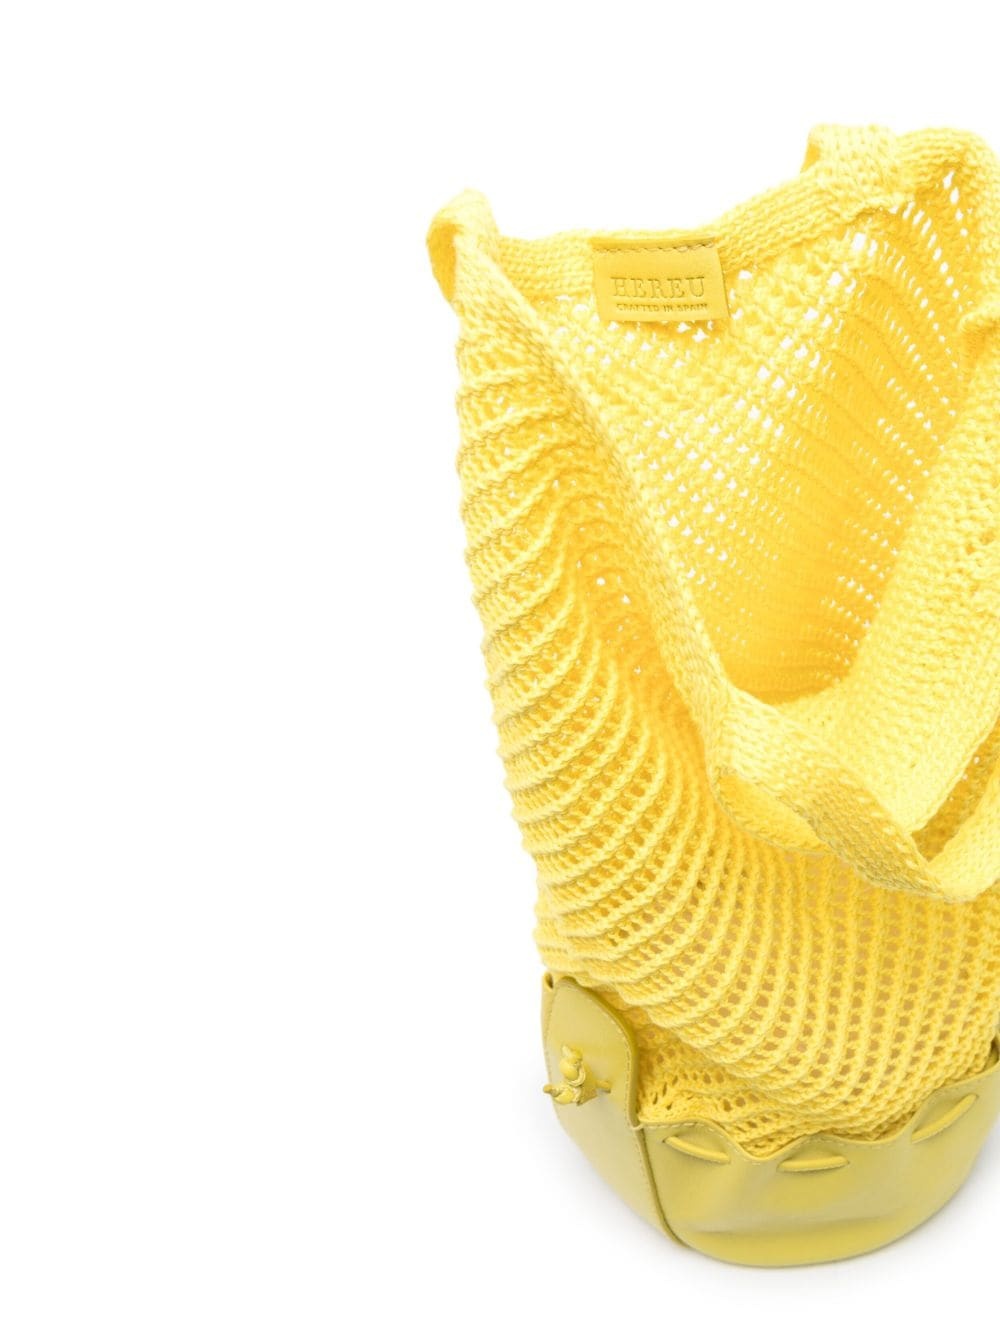 Fruita packable knitted net bag - 5